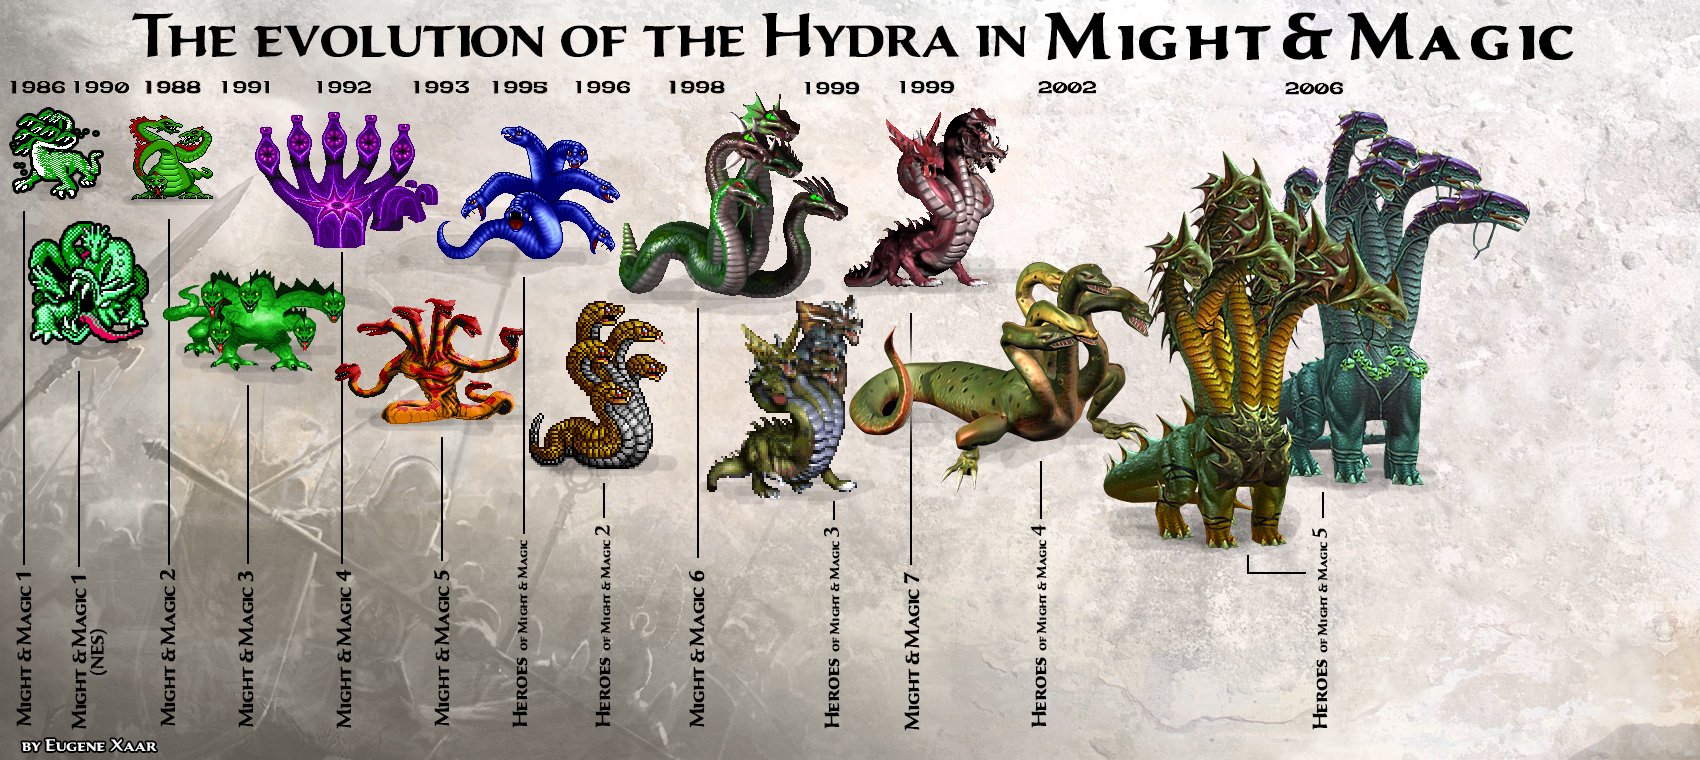 Hydra shop tor